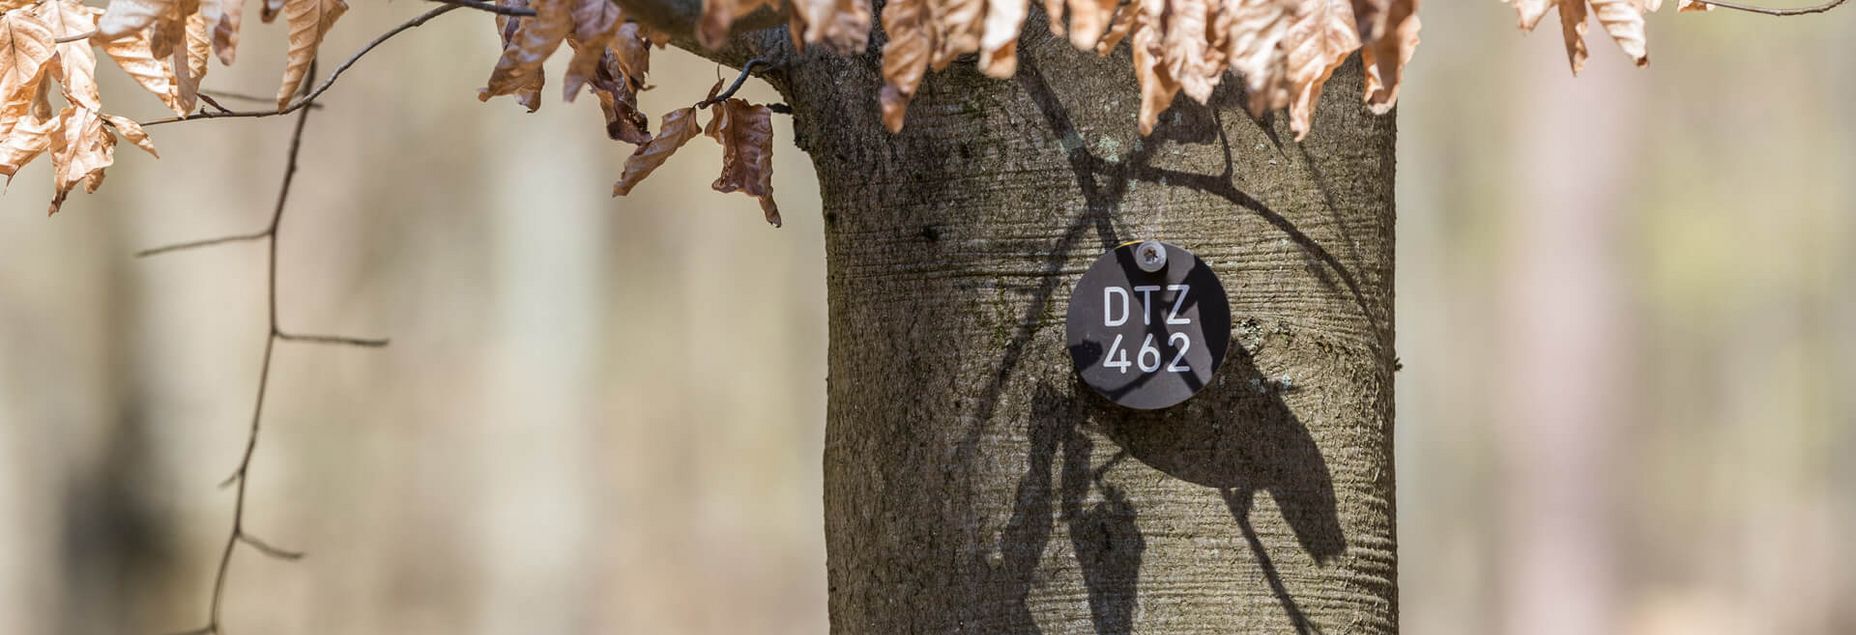 Baum DTZ 462 - Plakette